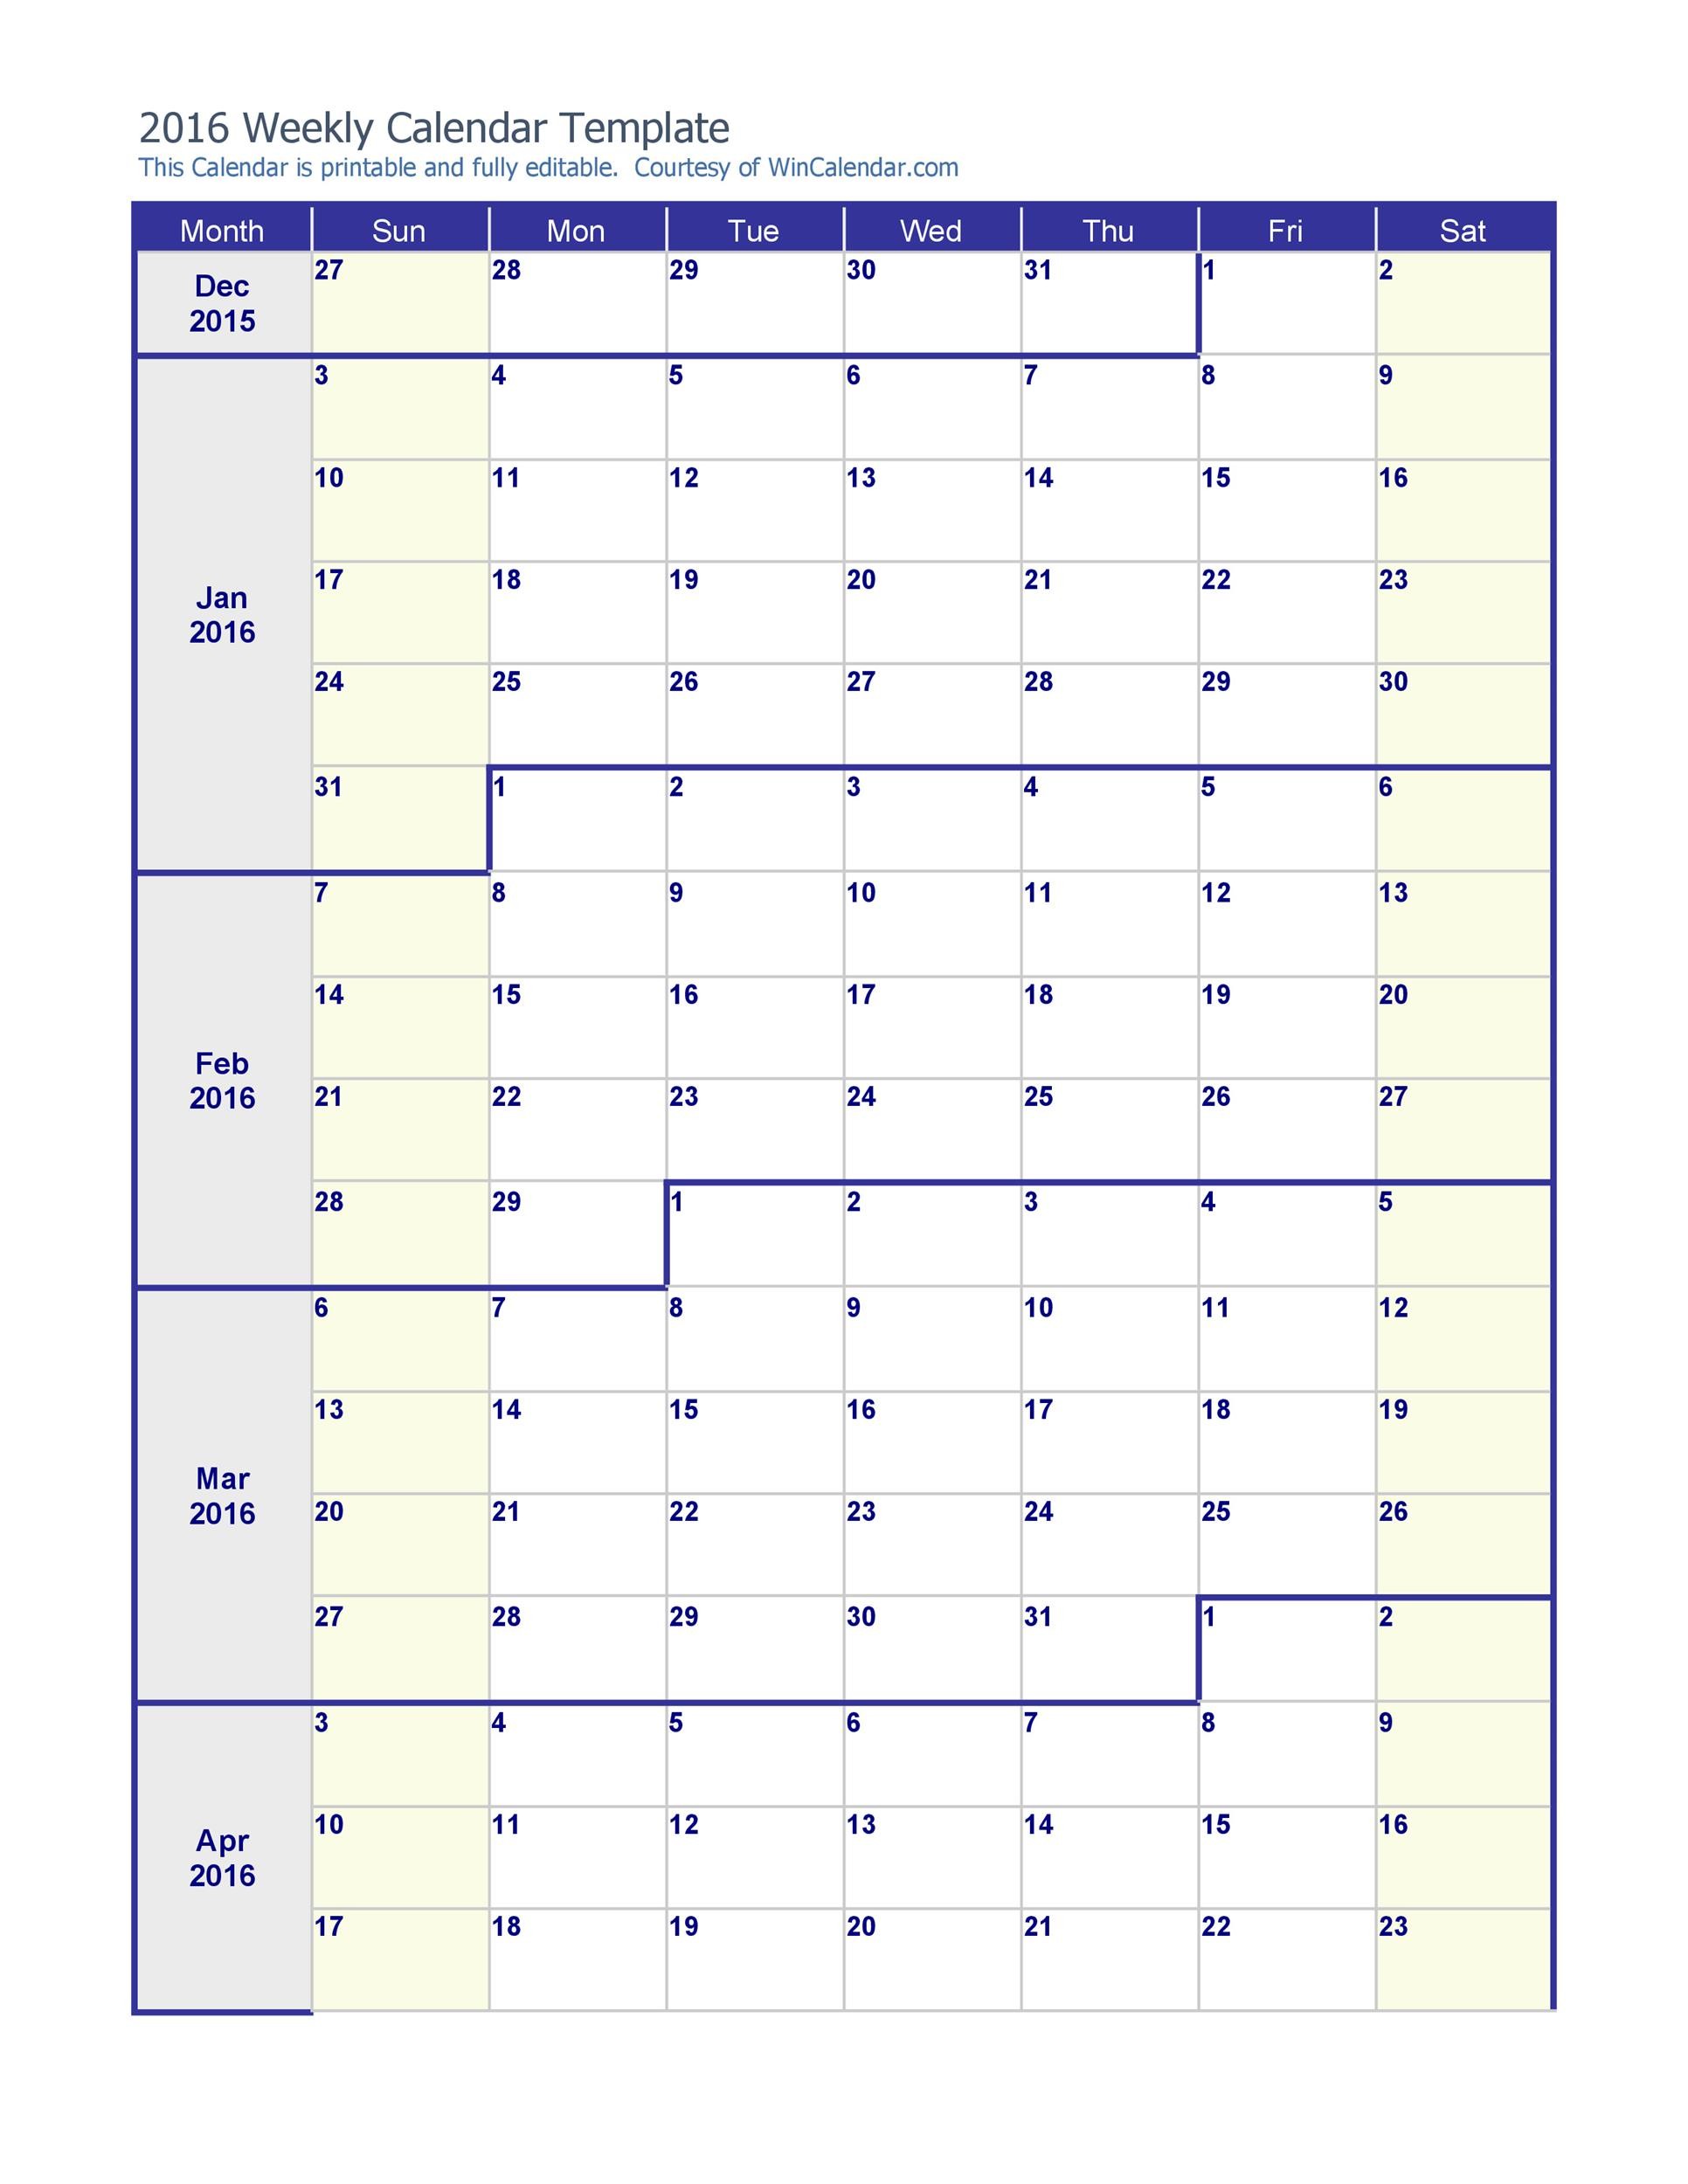 excel-weekly-calendar-template